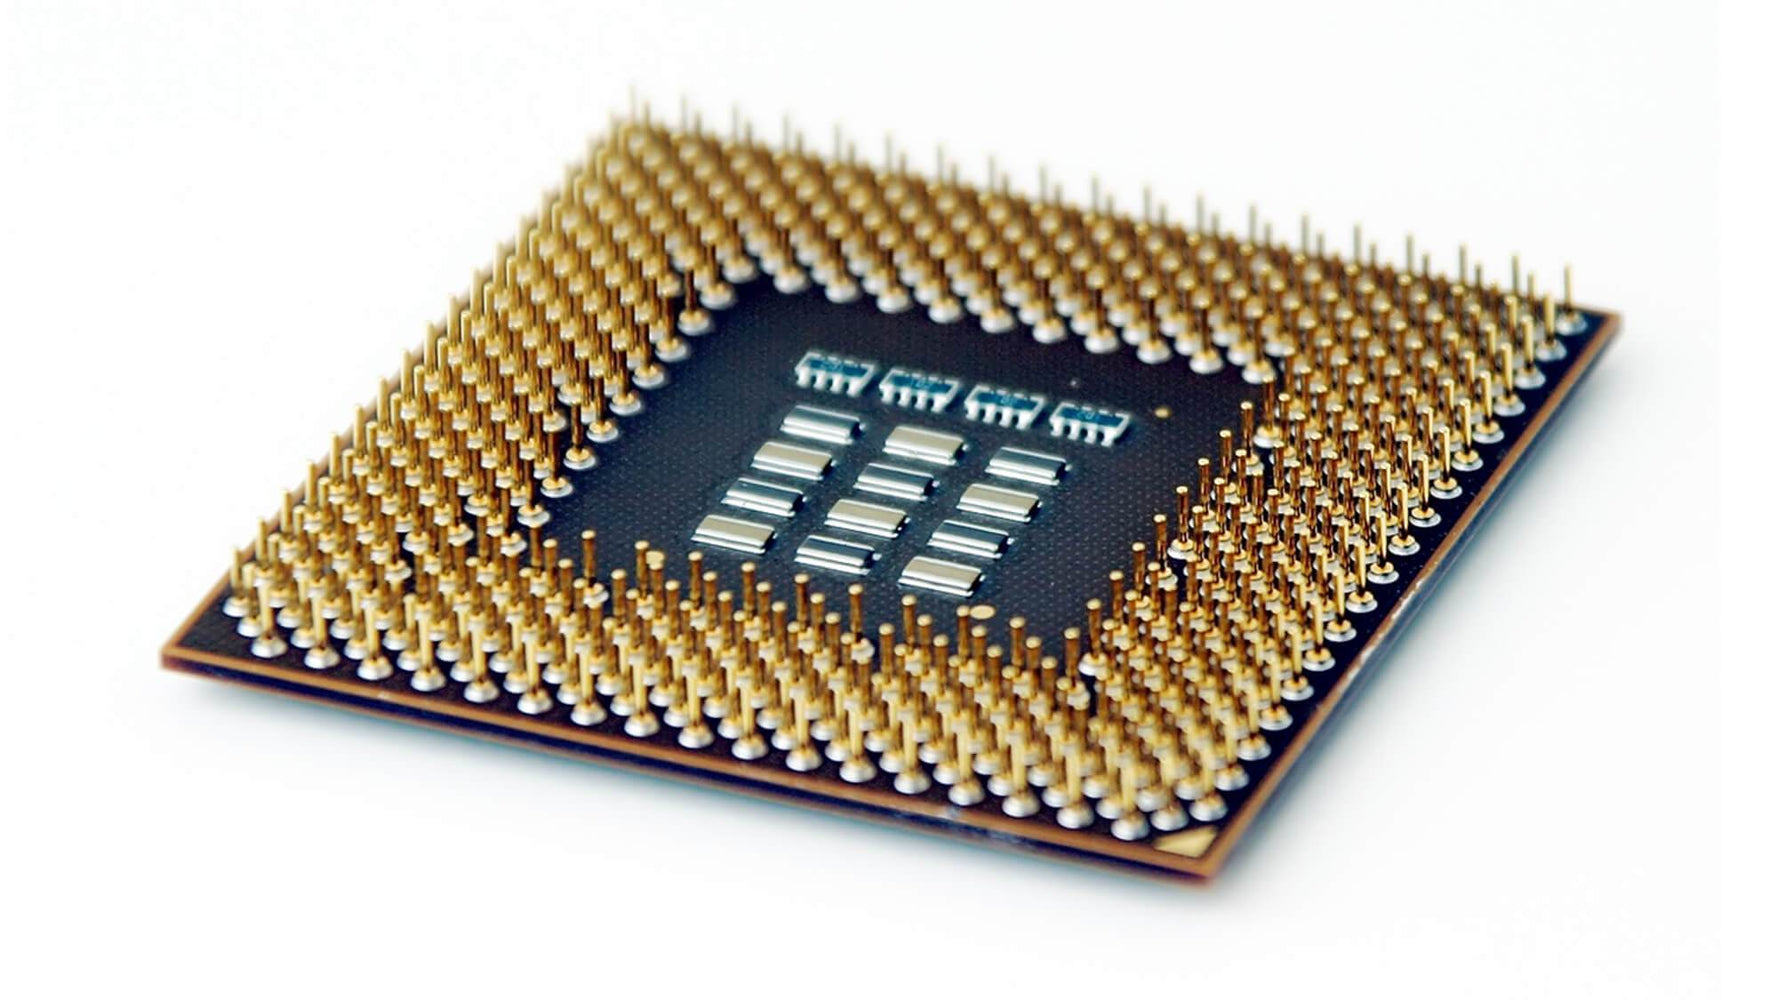 YD160XBCAEWOF - AMD Ryzen 5 1600X 6-Core 3.60GHz  16MB L3 Cache Socket AM4 Processor